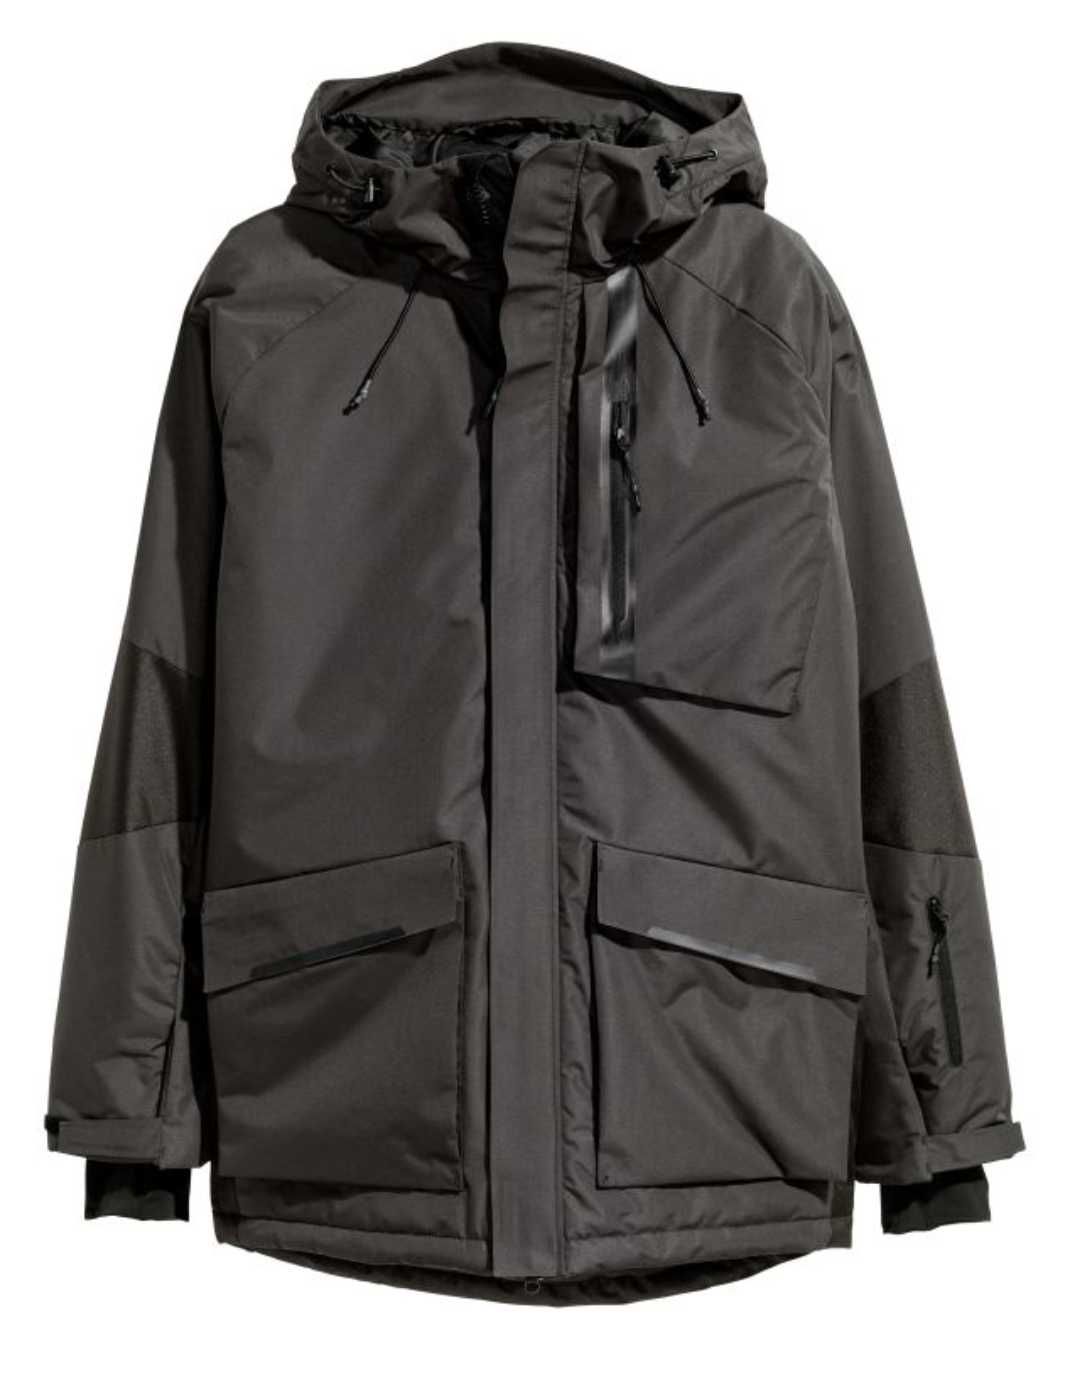 H&M sport р.48-50(S) пог-55см лыжная куртка мужская